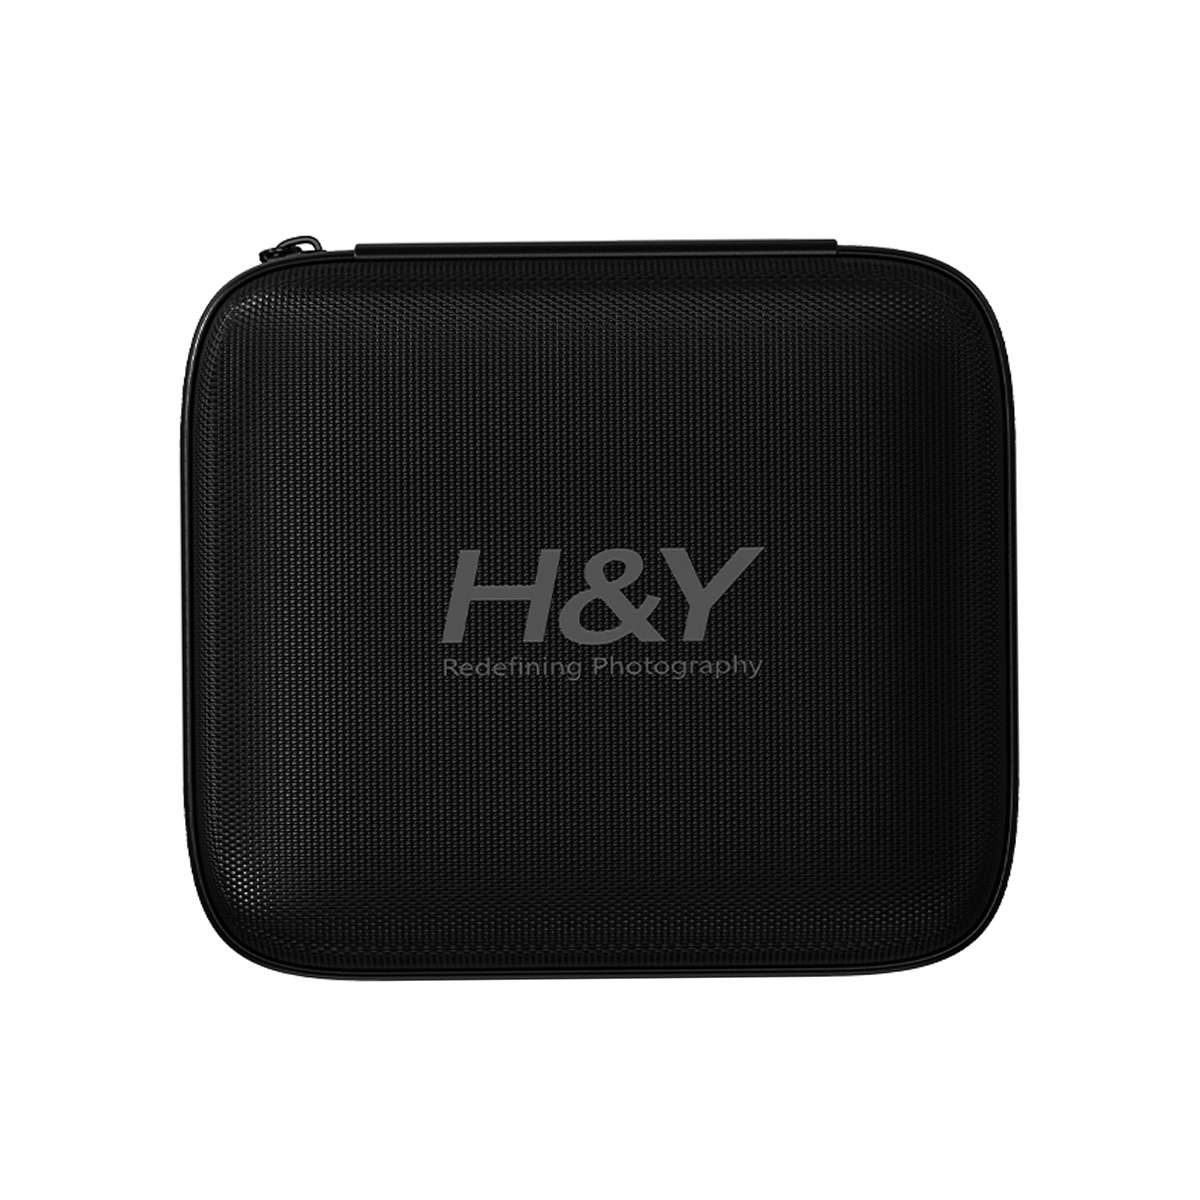 H&Y HD EVO-Series Landscape ND Filter Kit 82mm